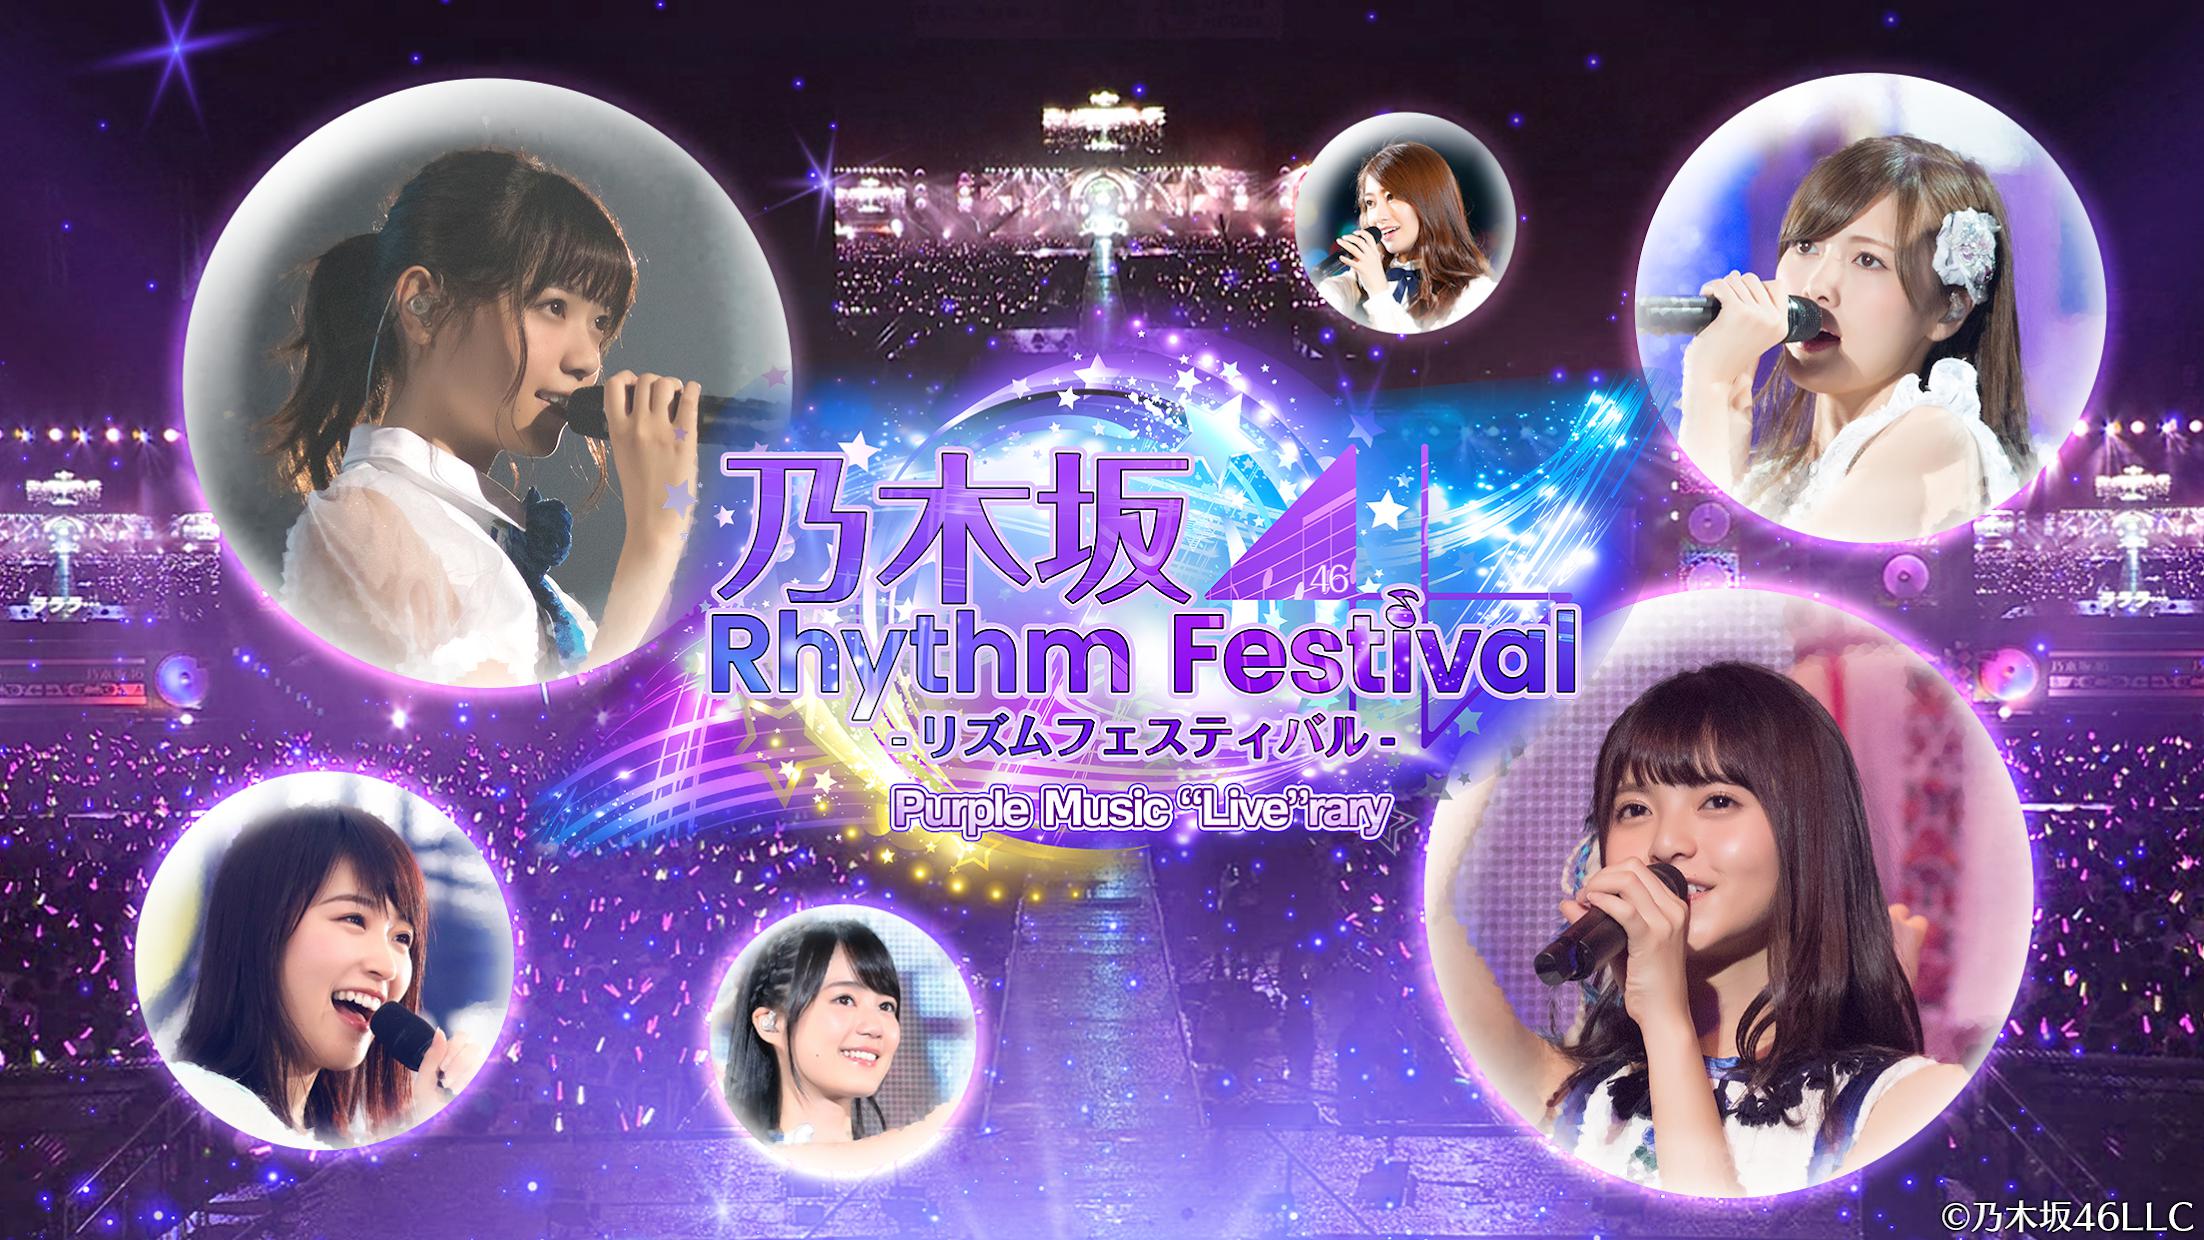 打开乃木坂46 Rhythm Festival提示网络异常或者连接不上 乃木坂46 攻略 Ourplay